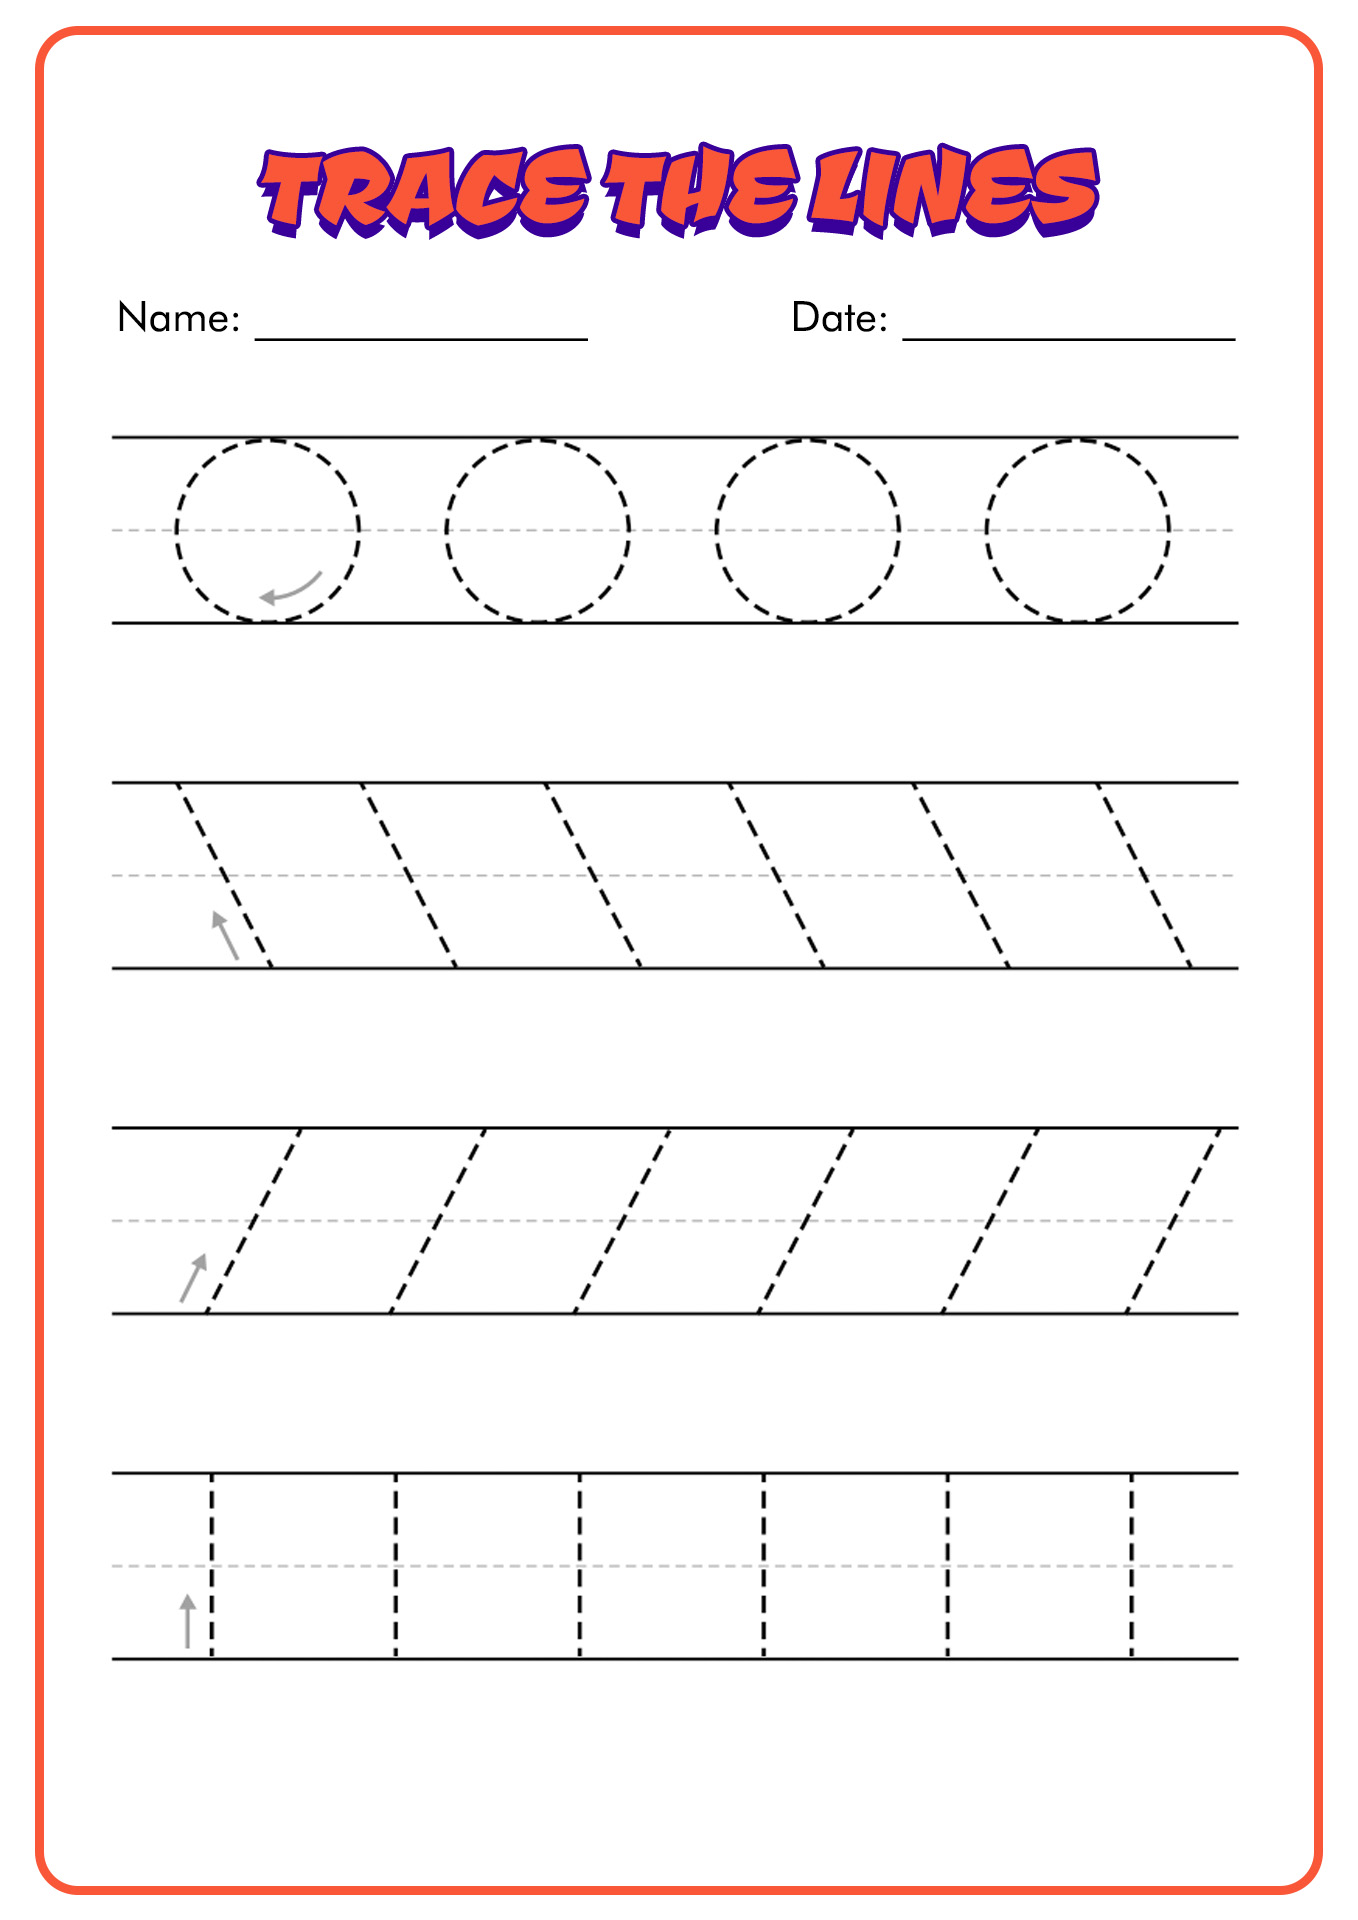 Writing Lines Preschool Worksheets Image